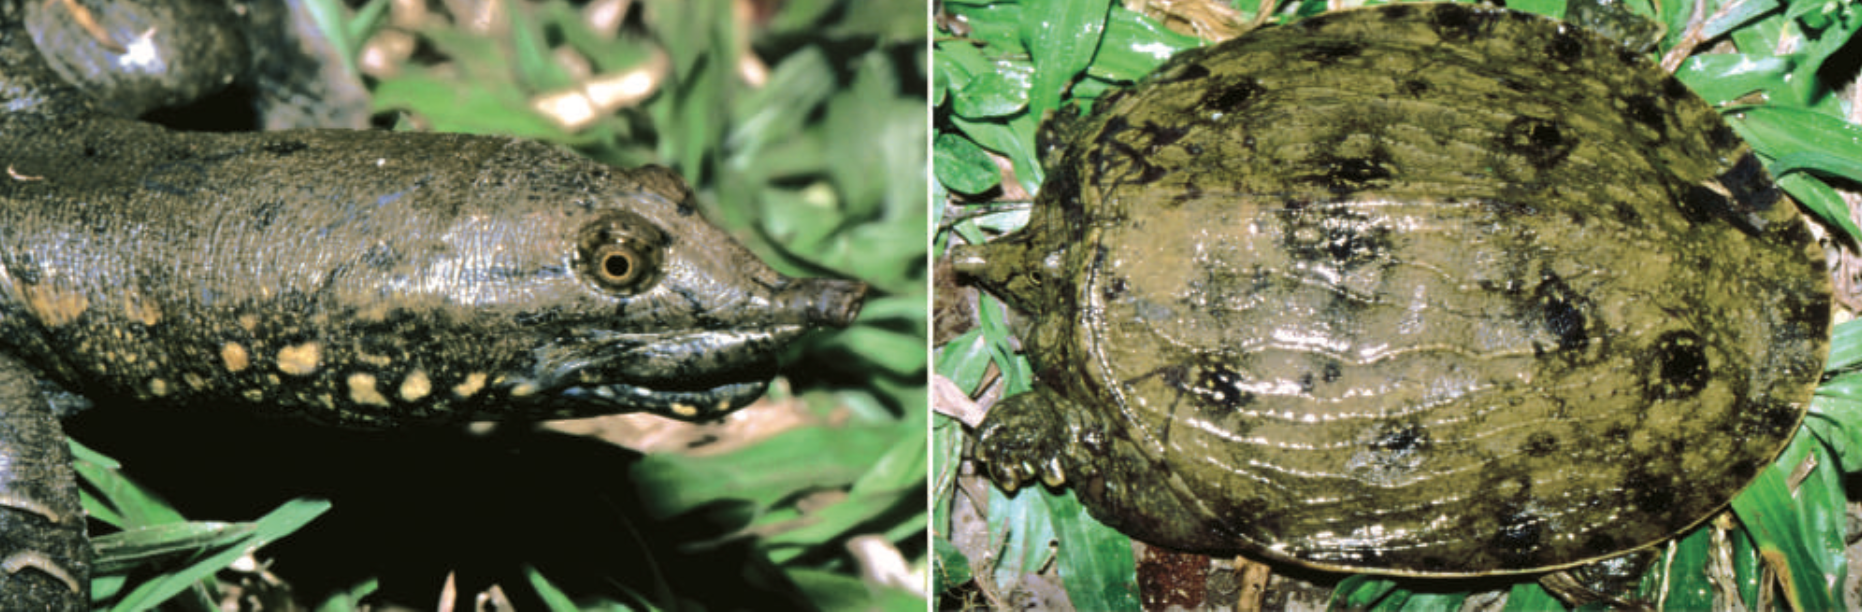 Loài rùa nhọ nhất Valentine: Mới tìm ra đã bị đưa ngay vào sách Đỏ, hạng mục đặc biệt nguy cấp - Ảnh 2.